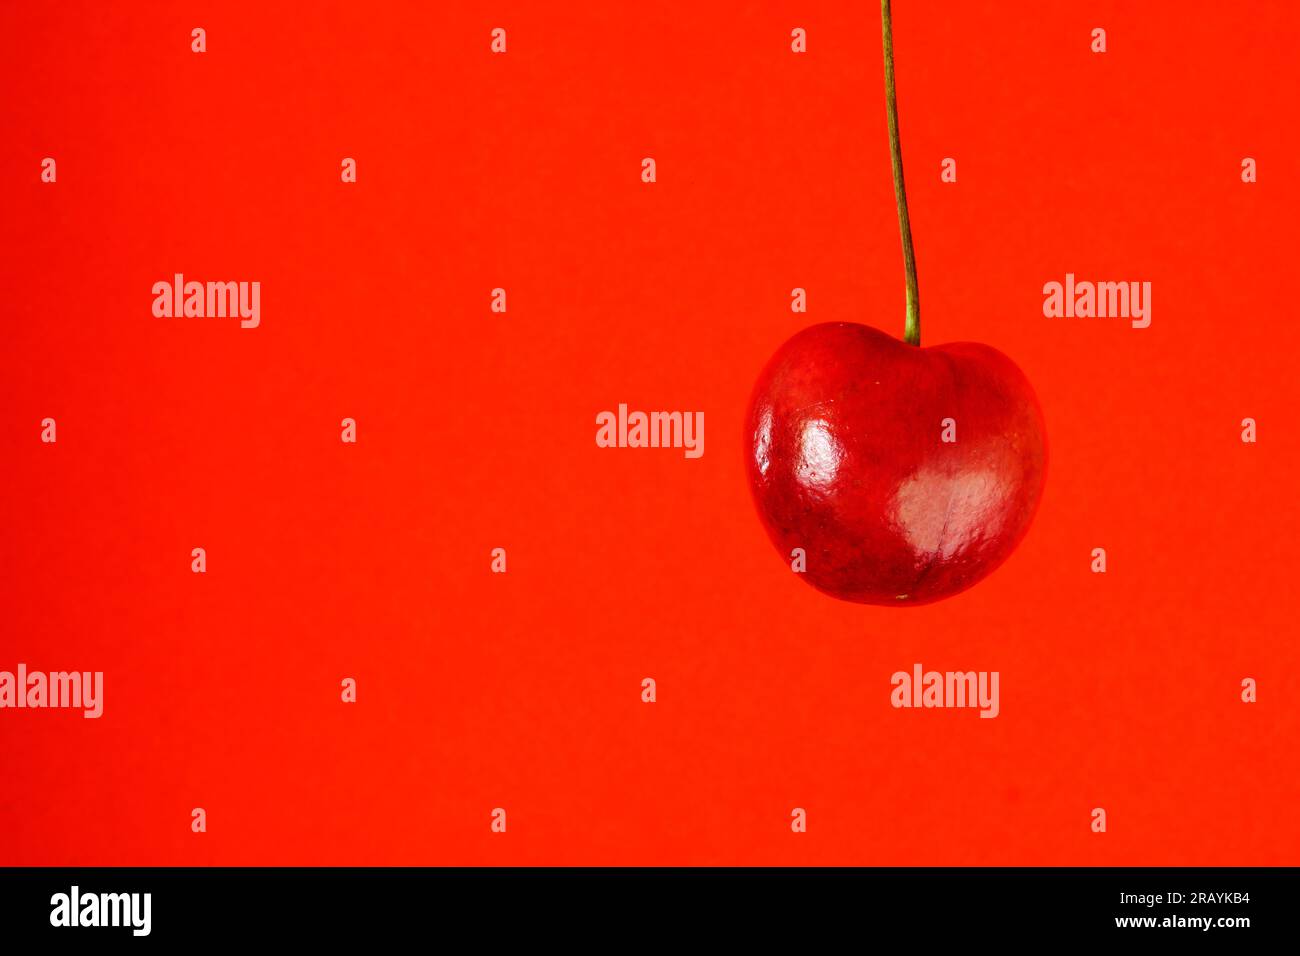 sweet cherry fruit isolated on orange background Stock Photo